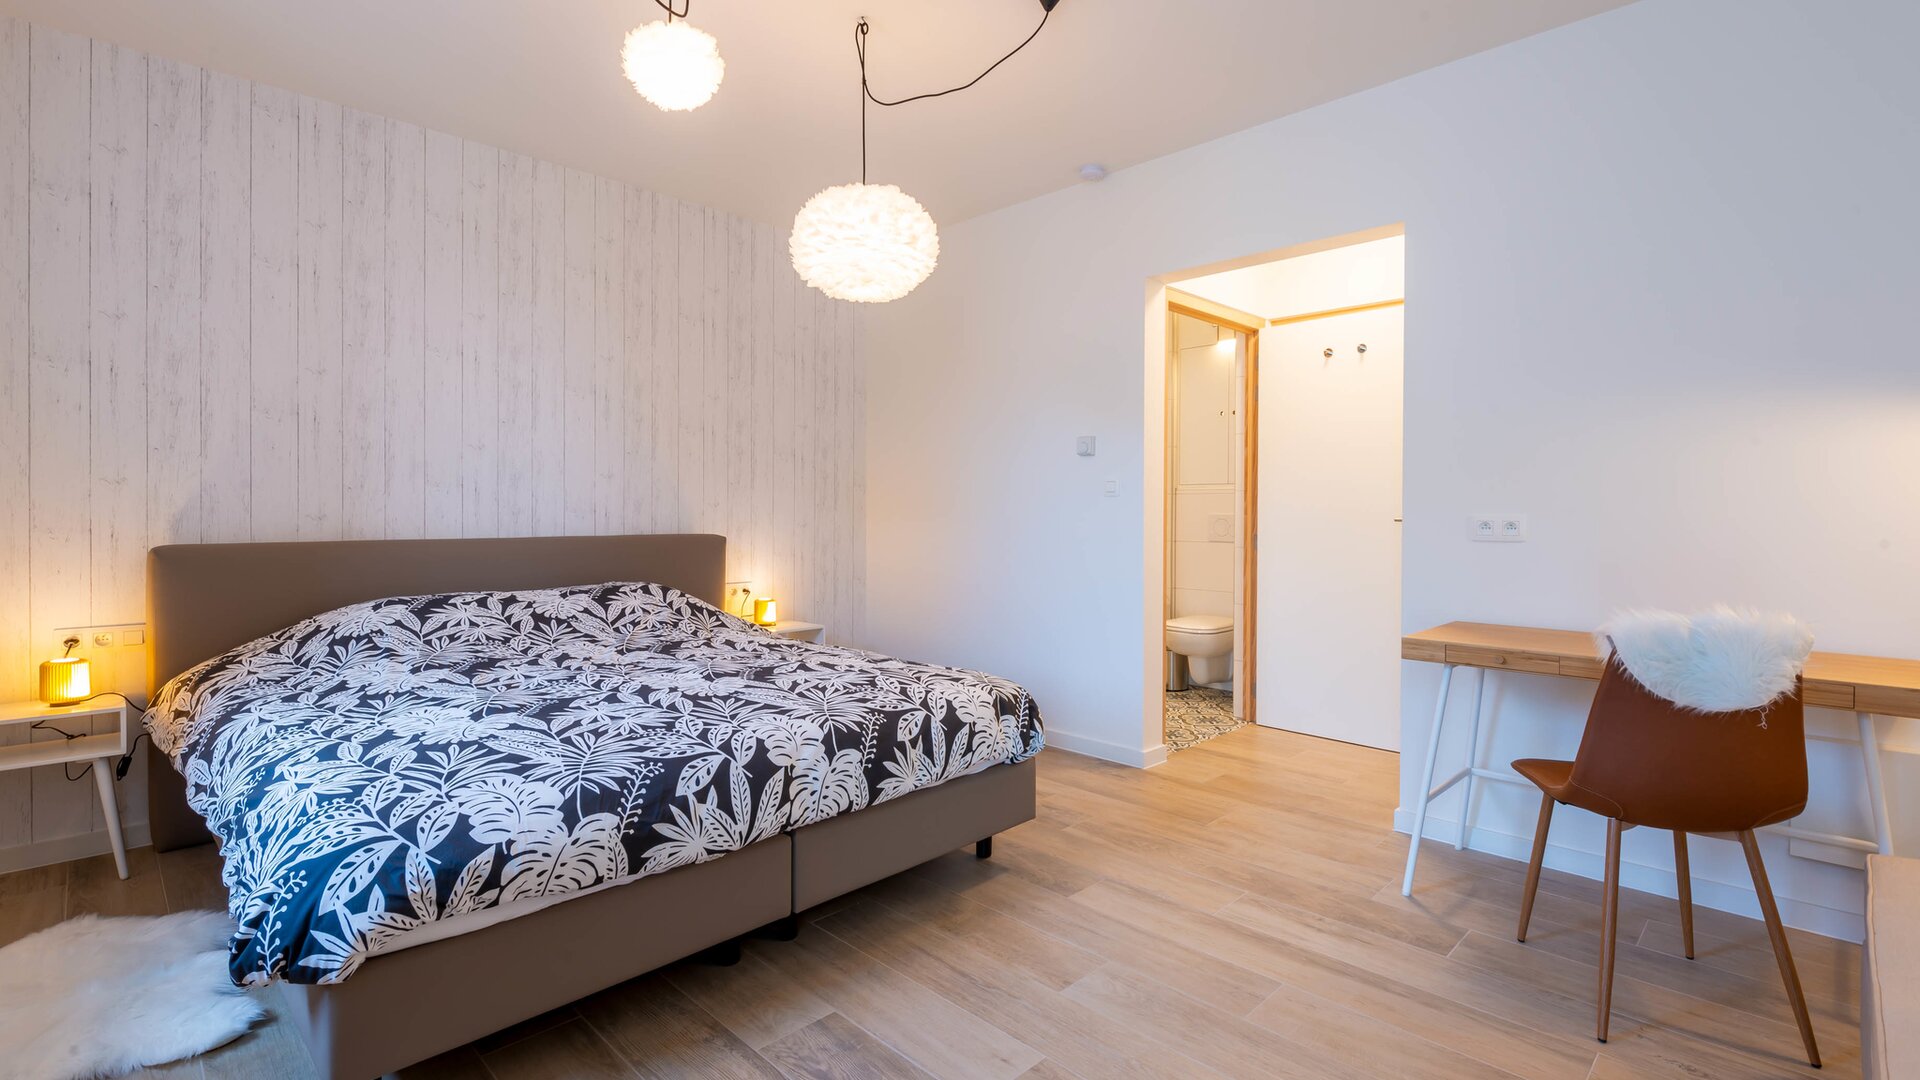 Vakantiewoning De Lokroep - Scandinavische slaapkamer gelijkvloers met ensuite badkamer